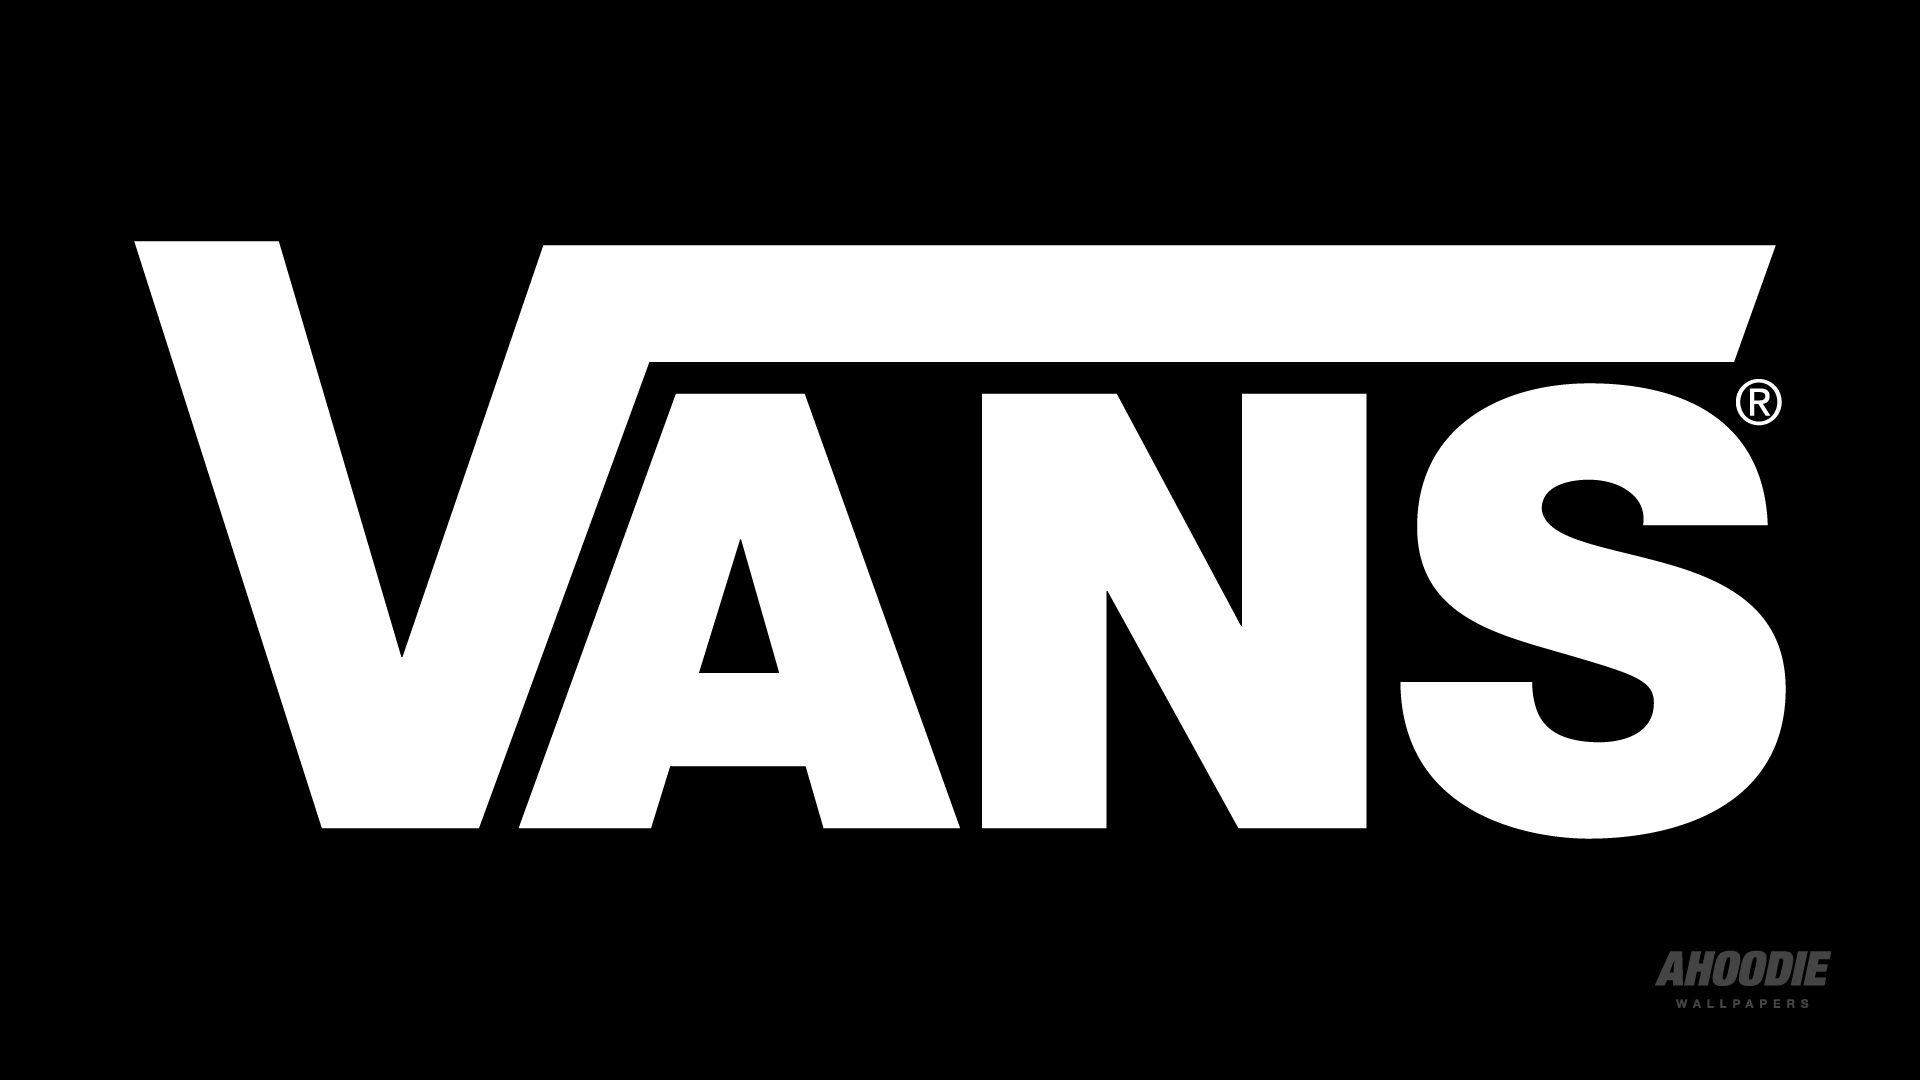 Vans Logo - Vans. Vans, Vans logo and Wallpaper